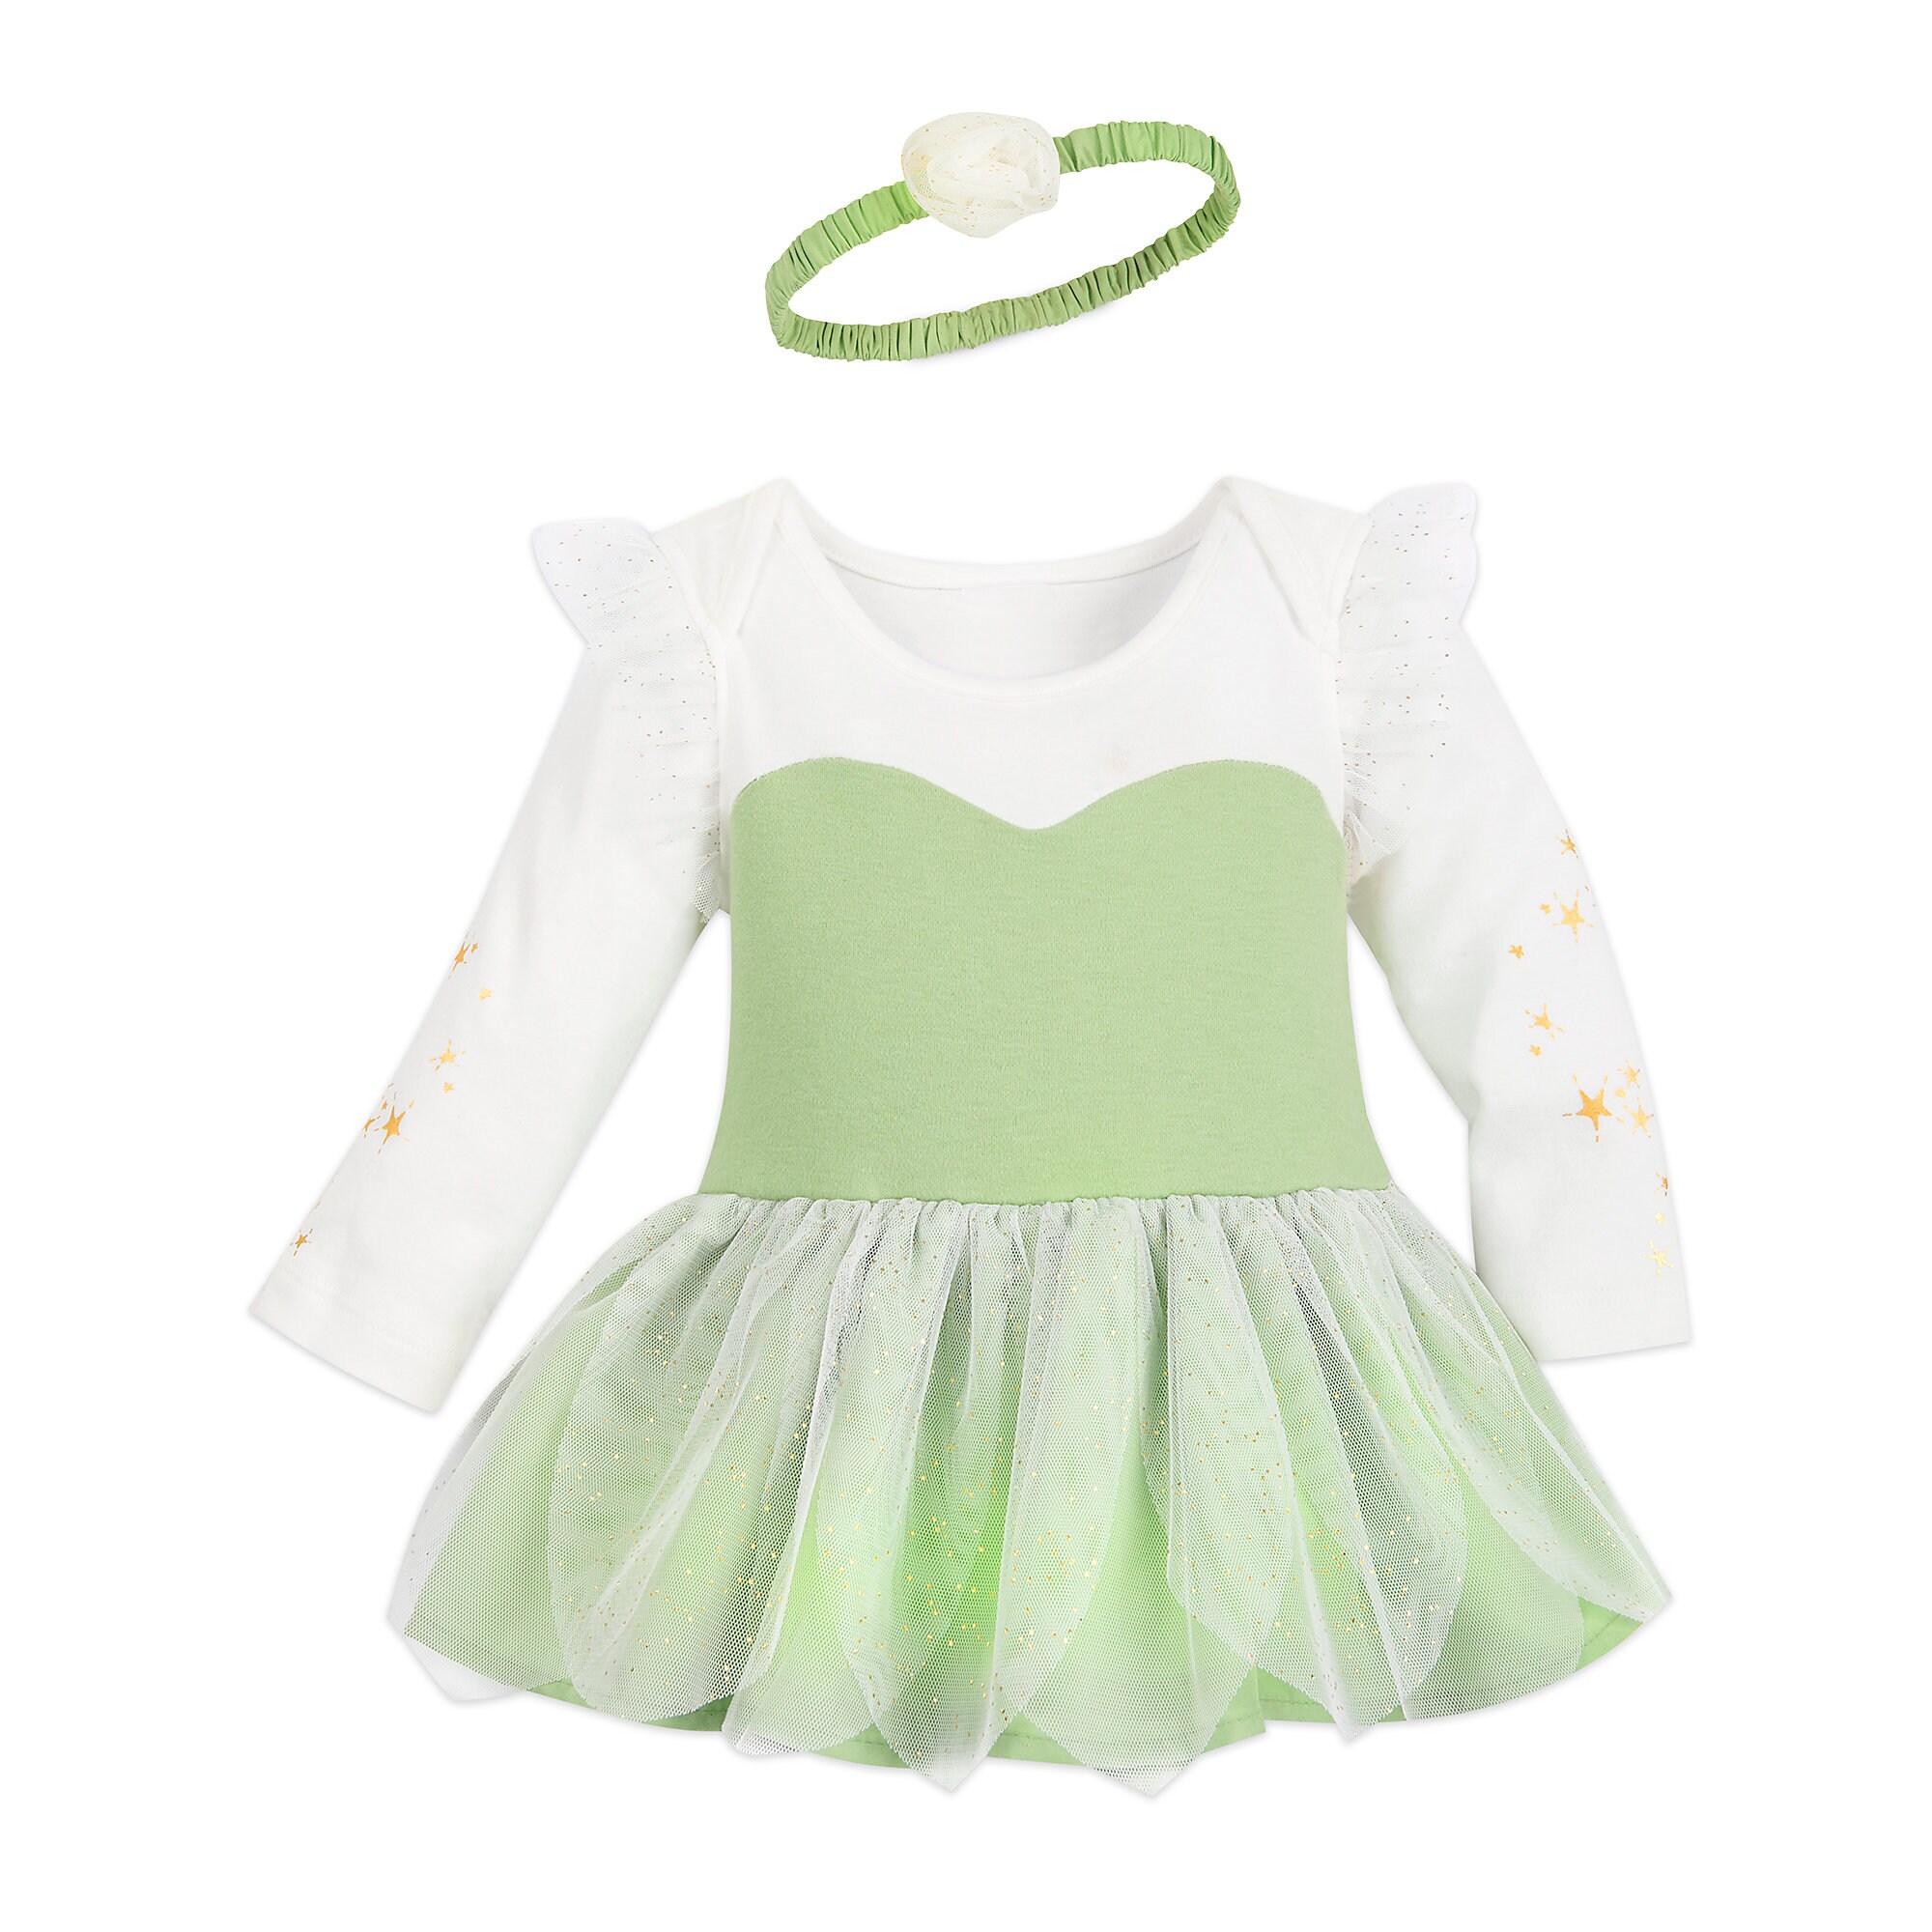 Tinker Bell Costume Bodysuit for Baby